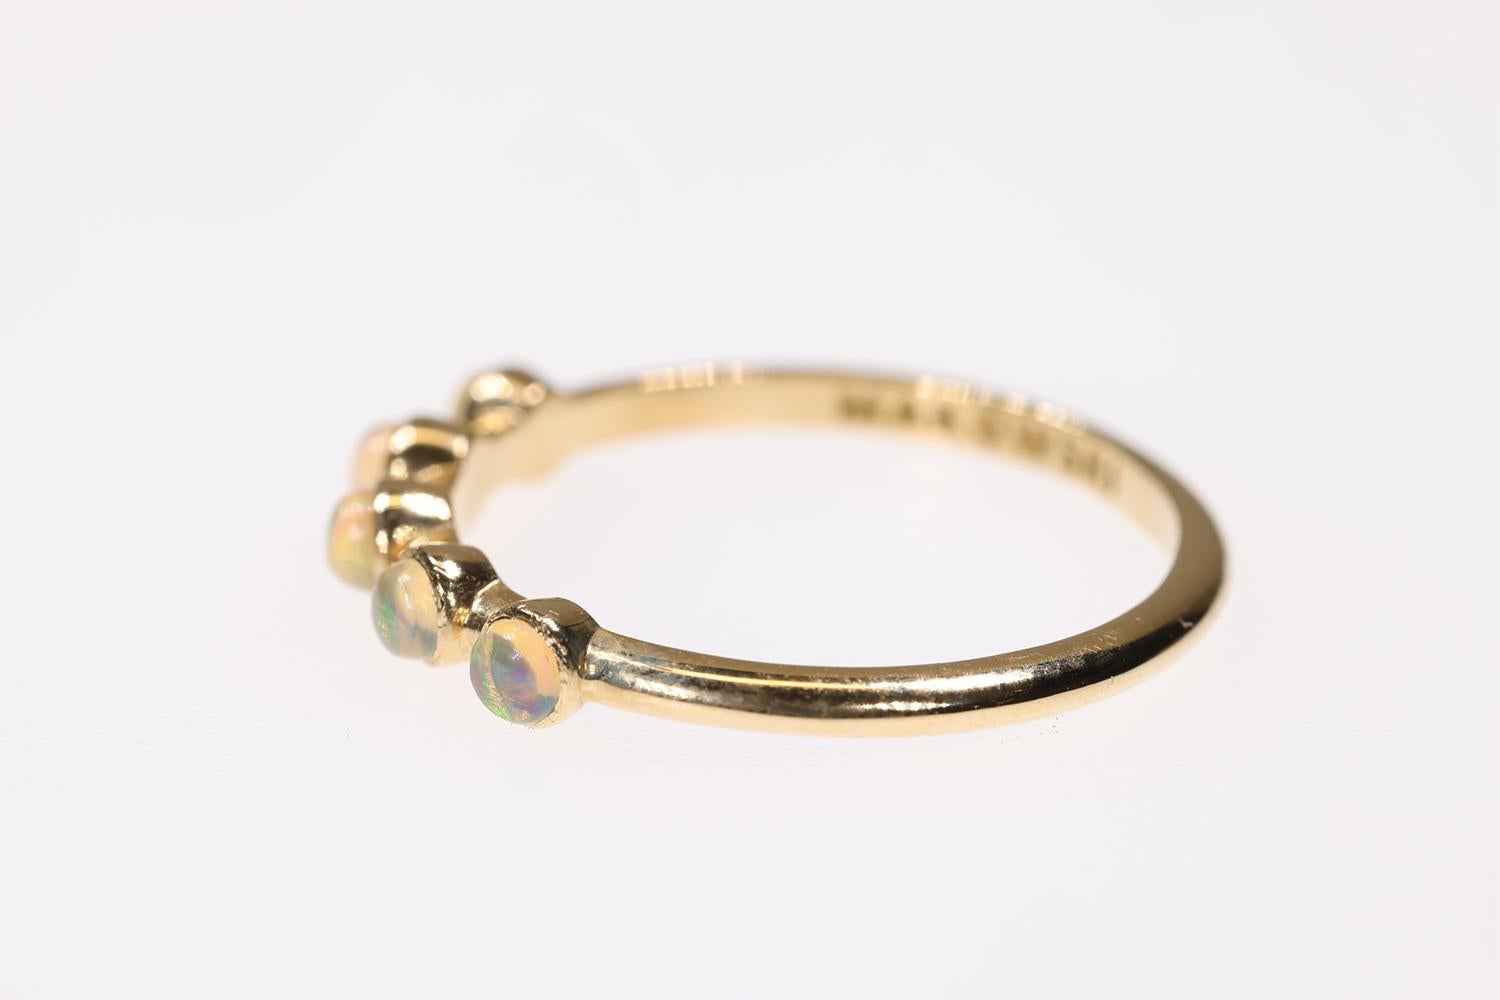 Dieser wunderschön gearbeitete und gestaltete Ring aus 18 Karat Gelbgold wird aus den feinsten Legierungen und Steinen hergestellt. Der Ring enthält fünf wunderschöne australische Opal-Cabochons mit einem Durchmesser von 3 mm. Der Ring wird von der